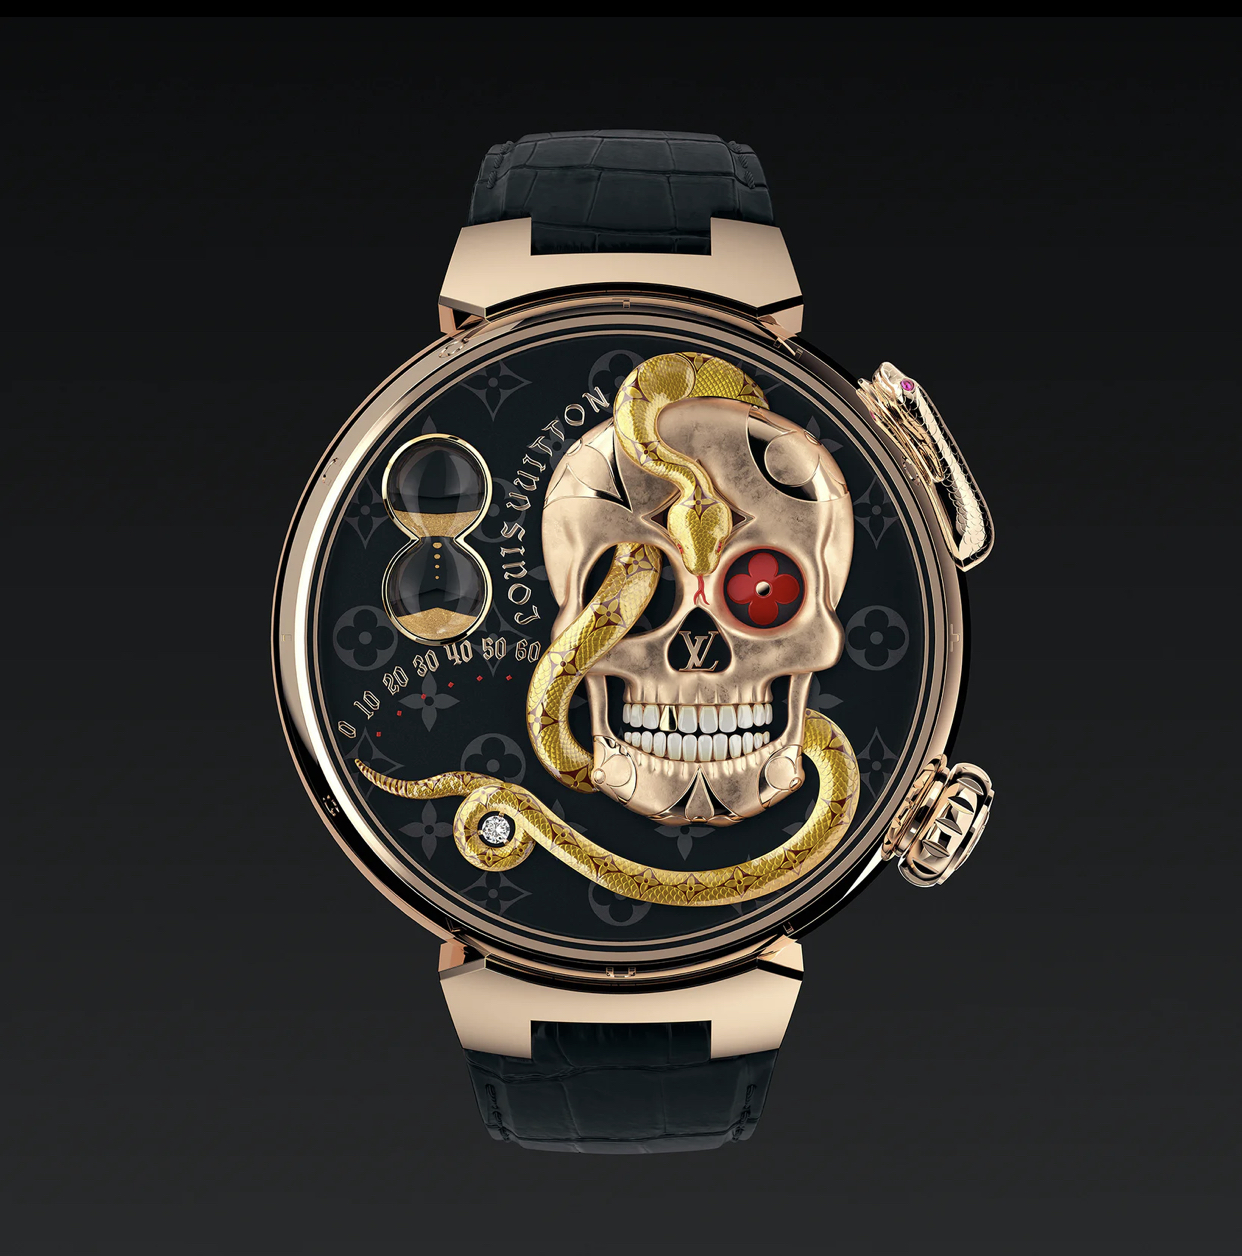 Novo relógio da Louis Vuitton marca as horas com ouro rosa, rubi e alta  tecnologia - Blog Ana Cláudia Thorpe